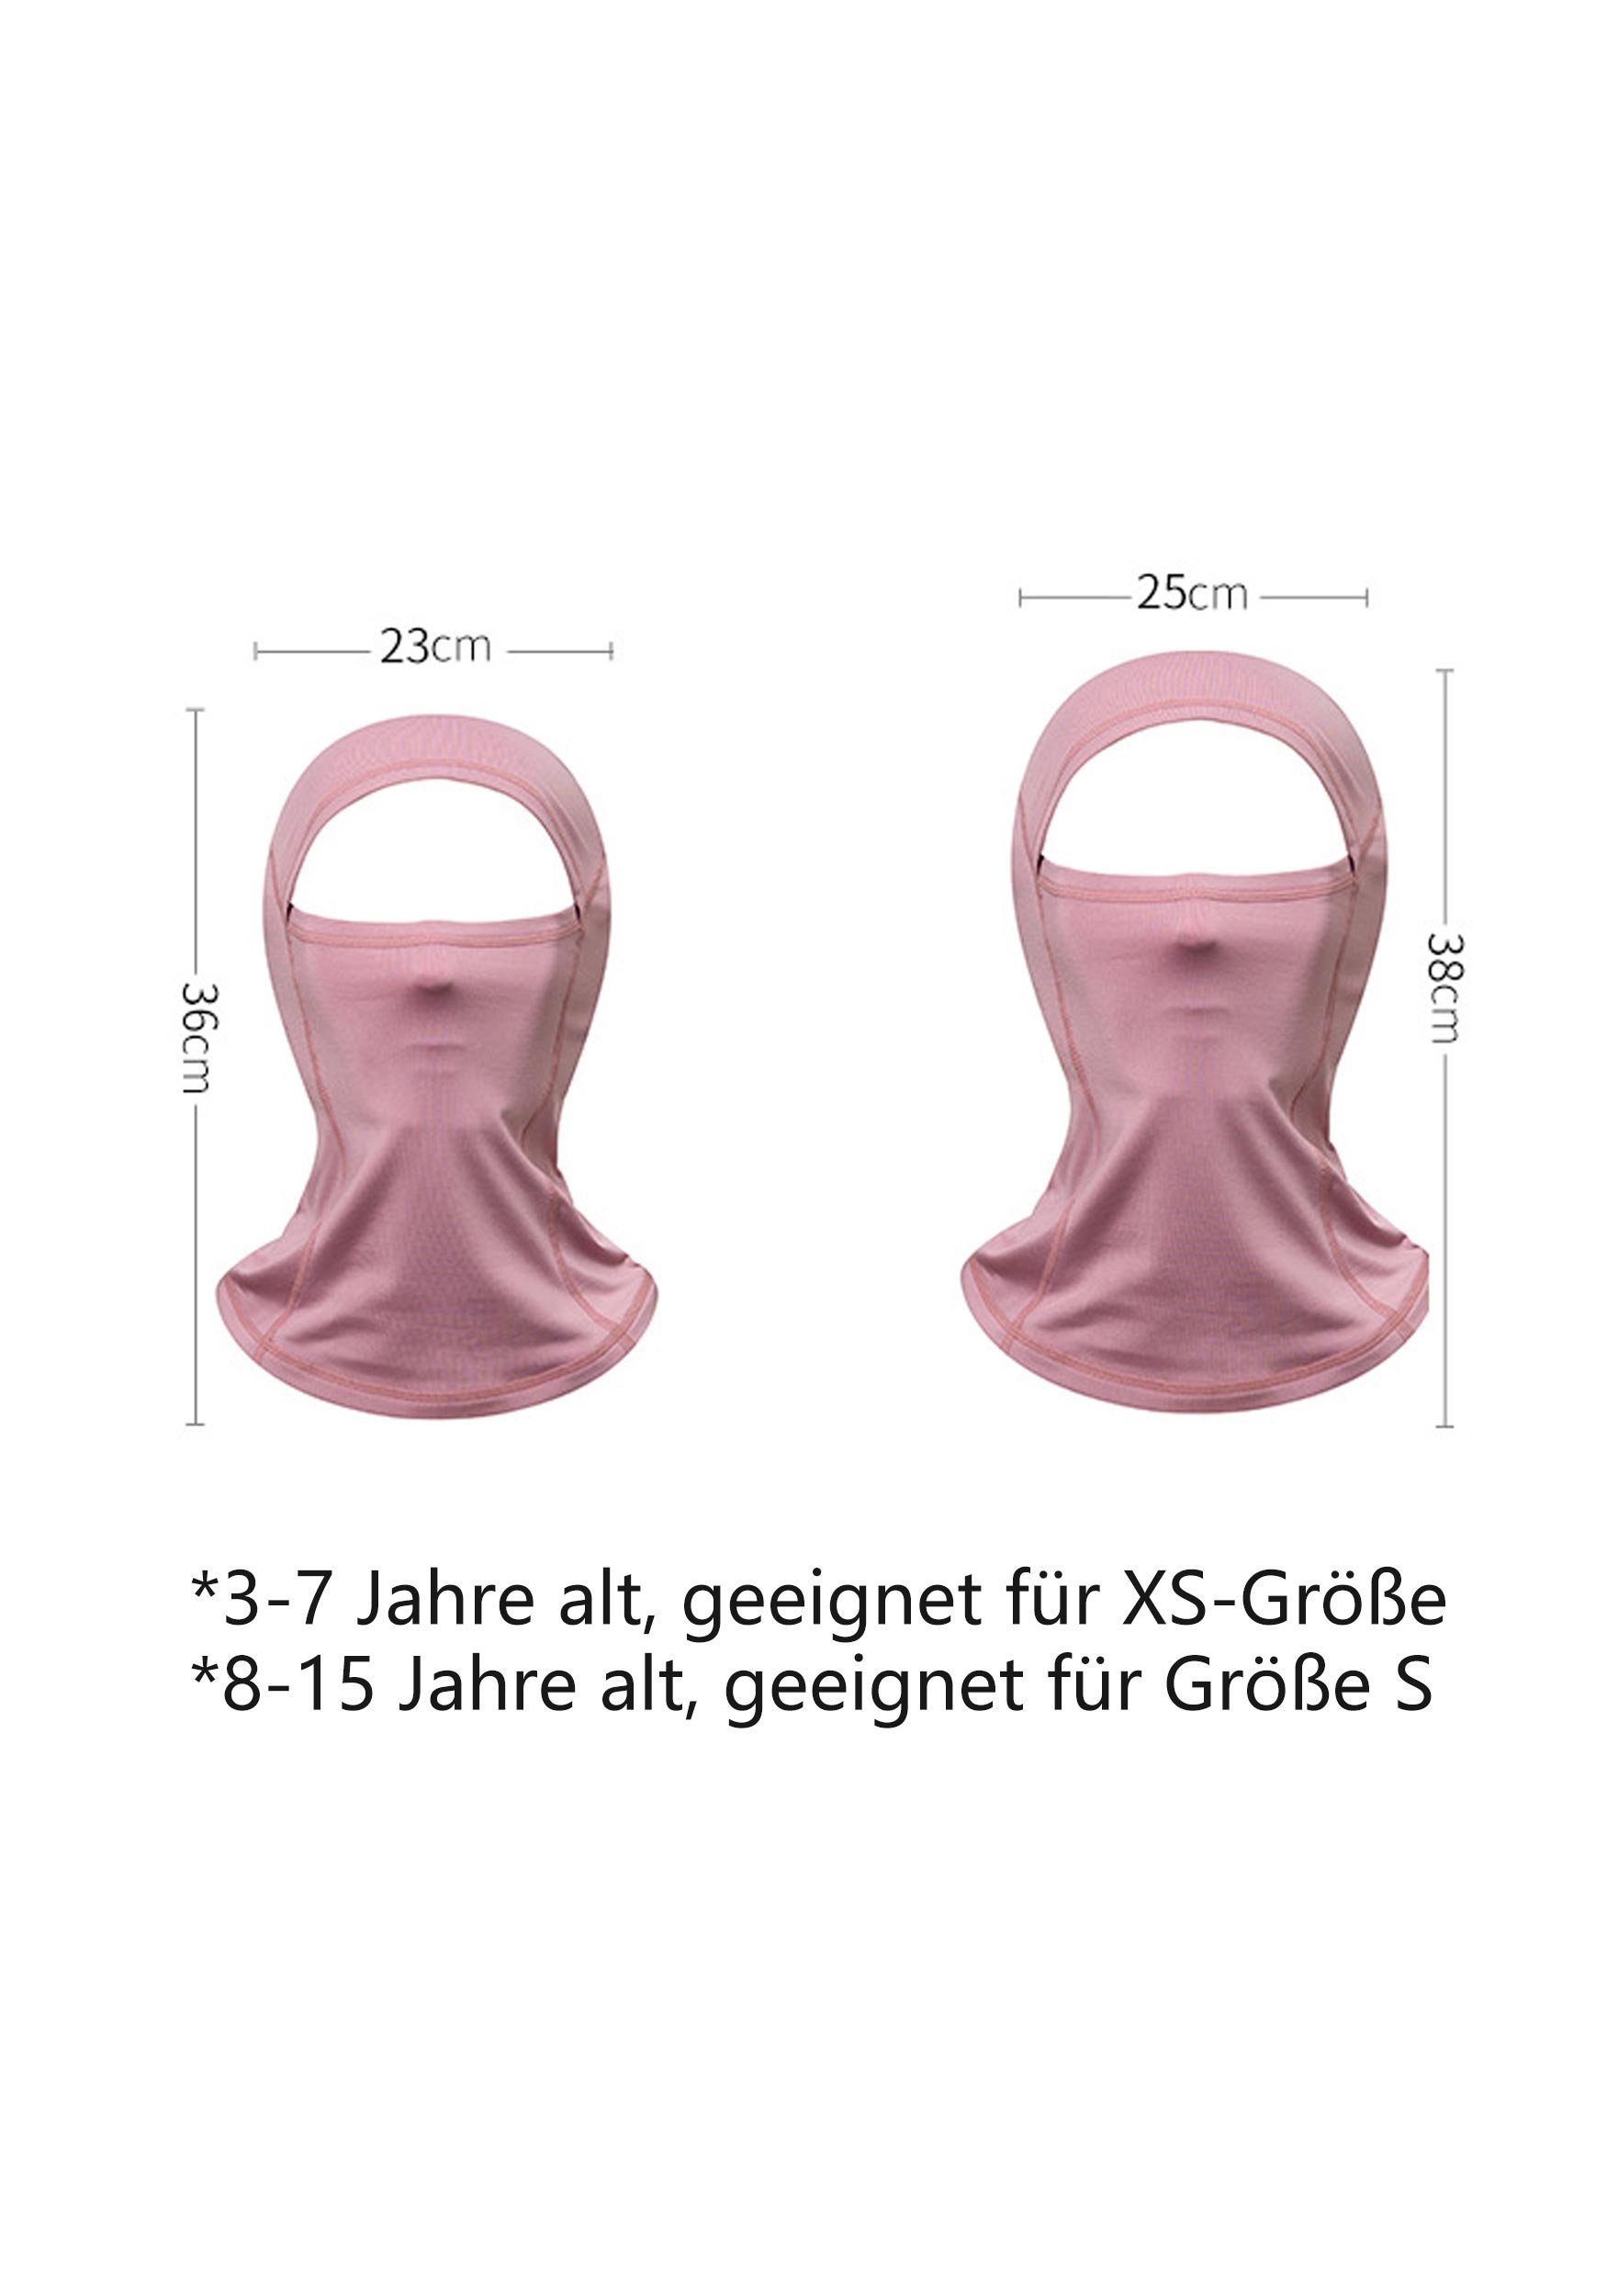 für Umfassenden Widersteht Schutz UV-Strahlen Sturmhaube Rosa-2 Skimaske MAGICSHE